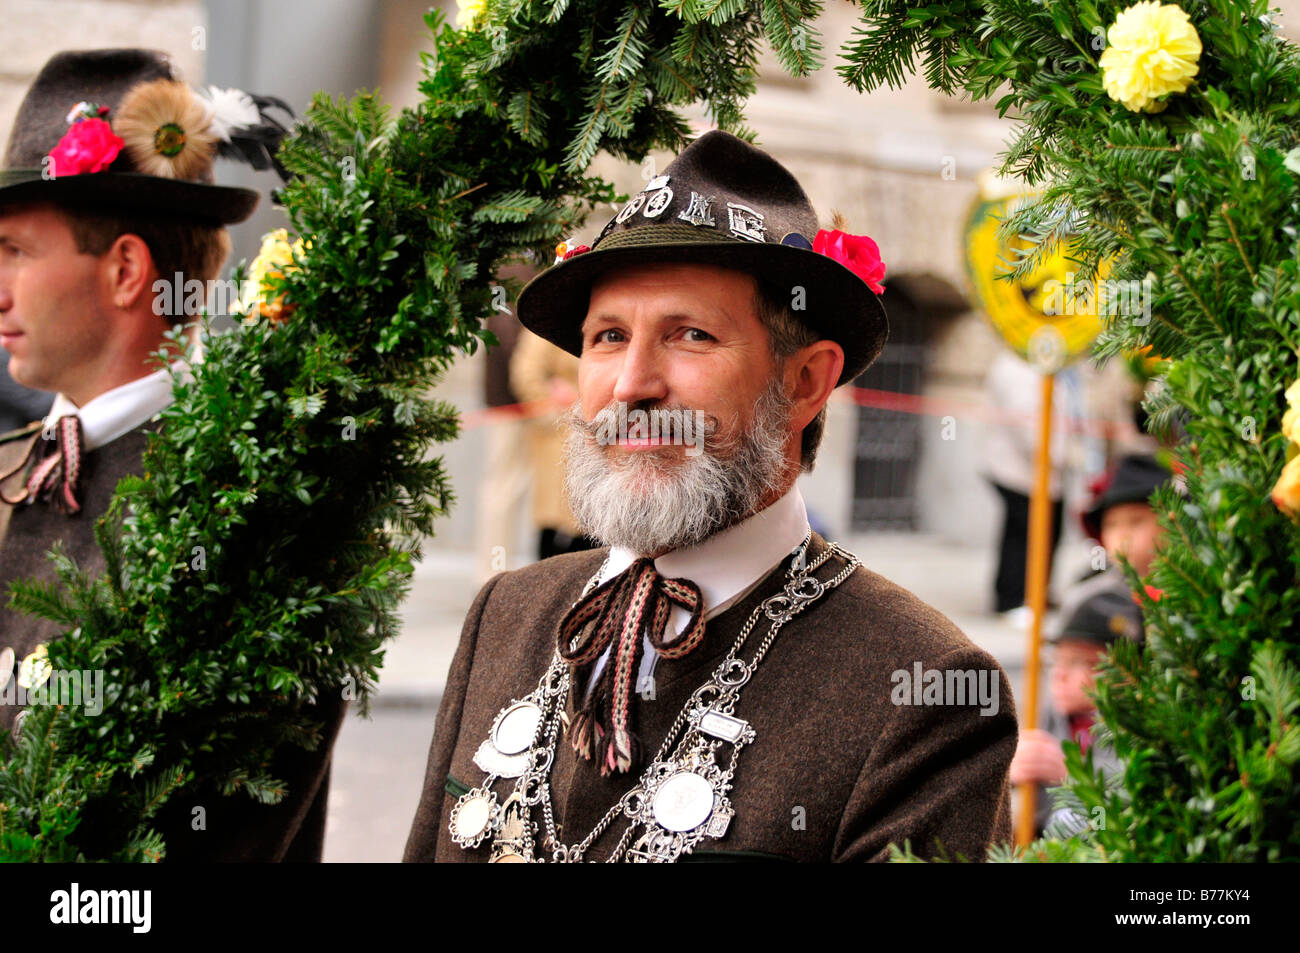 Bavarian homme portant un costume traditionnel au cours de l'Trachtenumzug, parade de costumes traditionnels, à l'Oktoberfest, Munich, Ba Banque D'Images